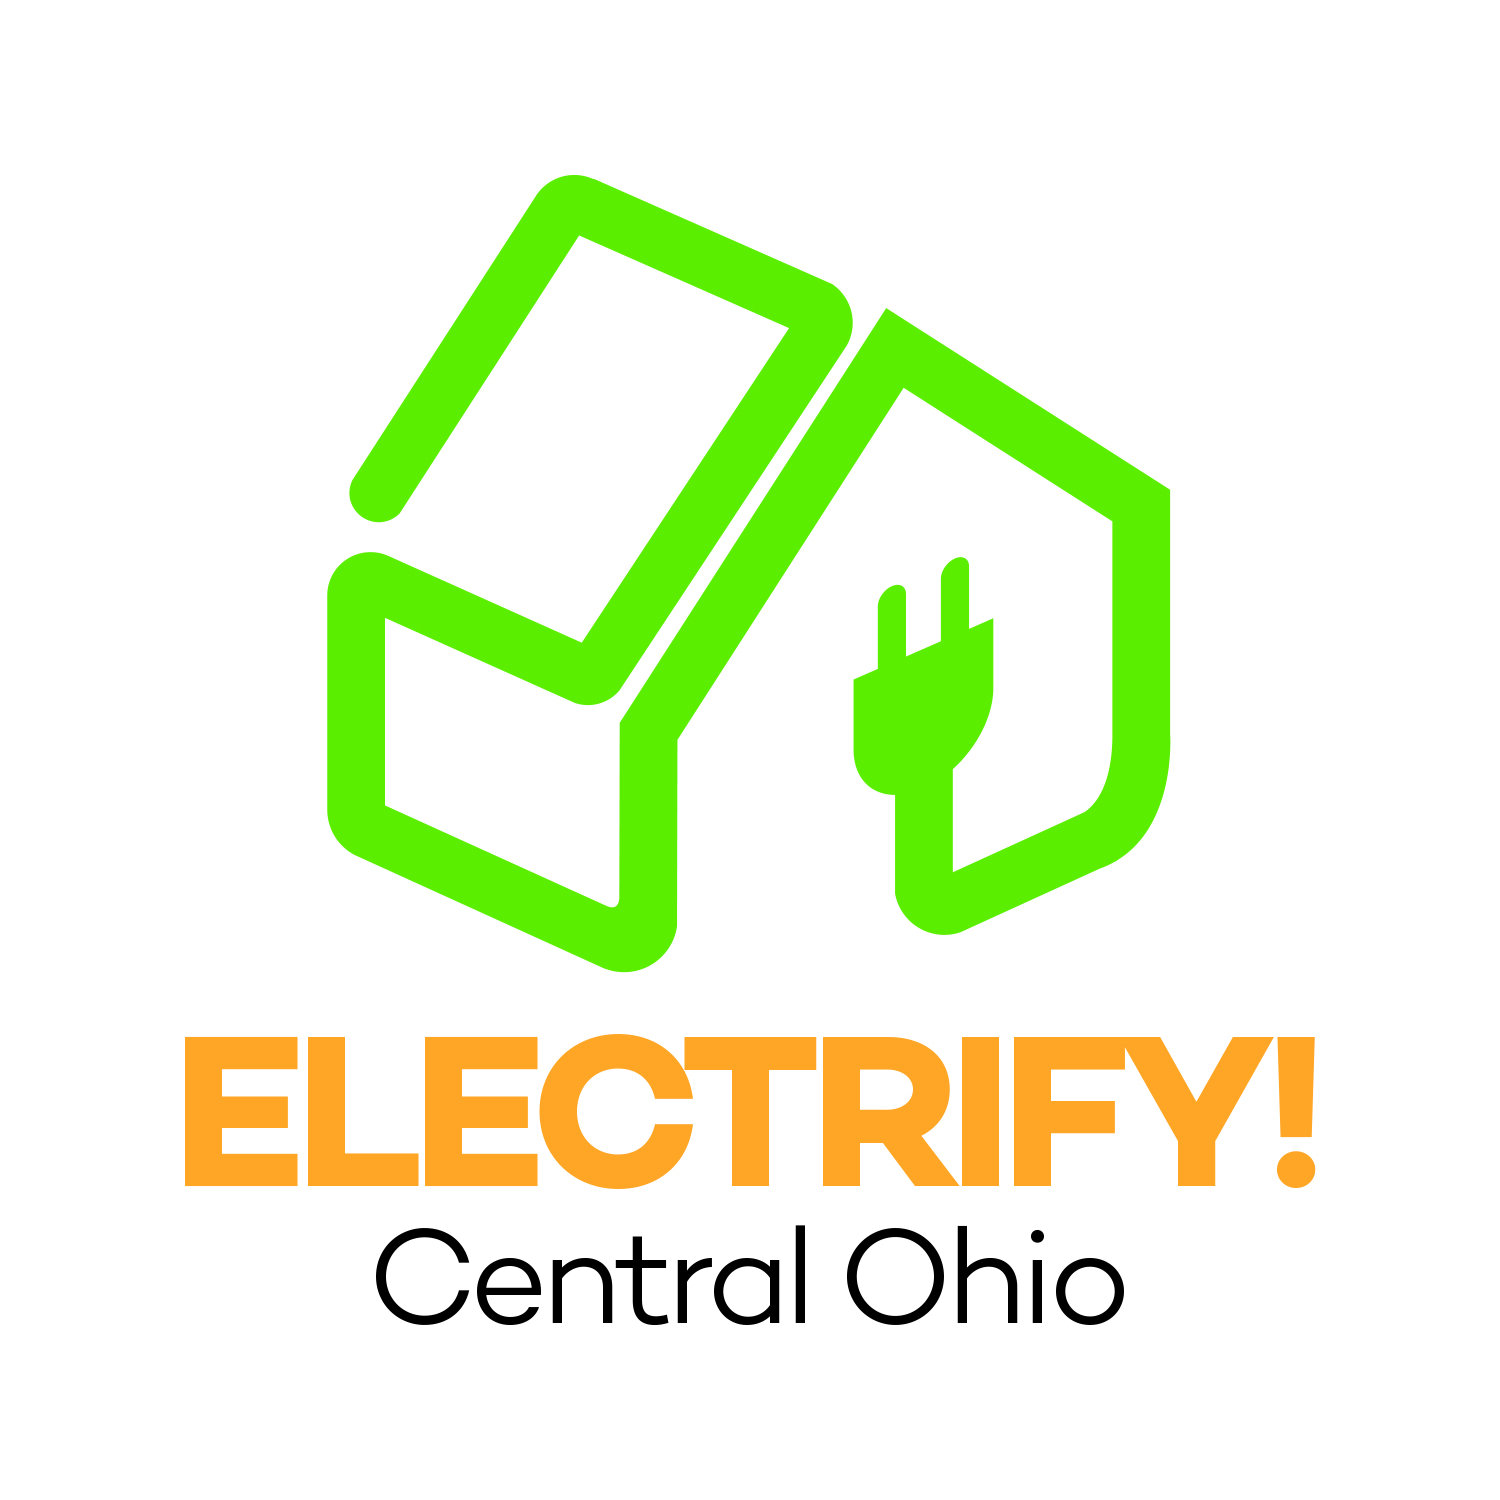 Electrify Central Ohio